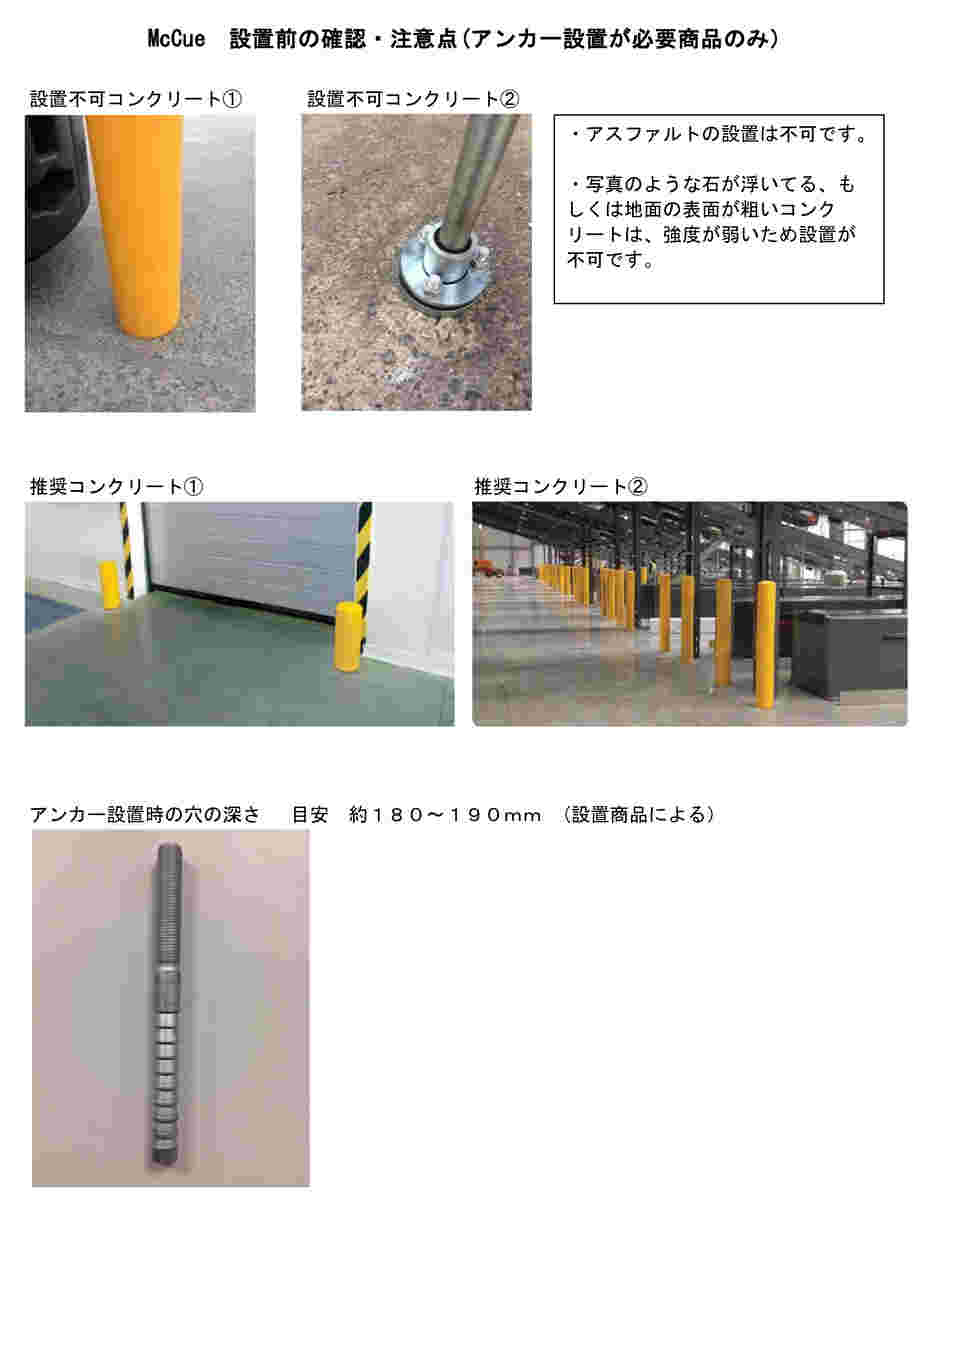 64-5161-83 歩行路バリアシステム Pedestrian Barrier System 【AXEL 